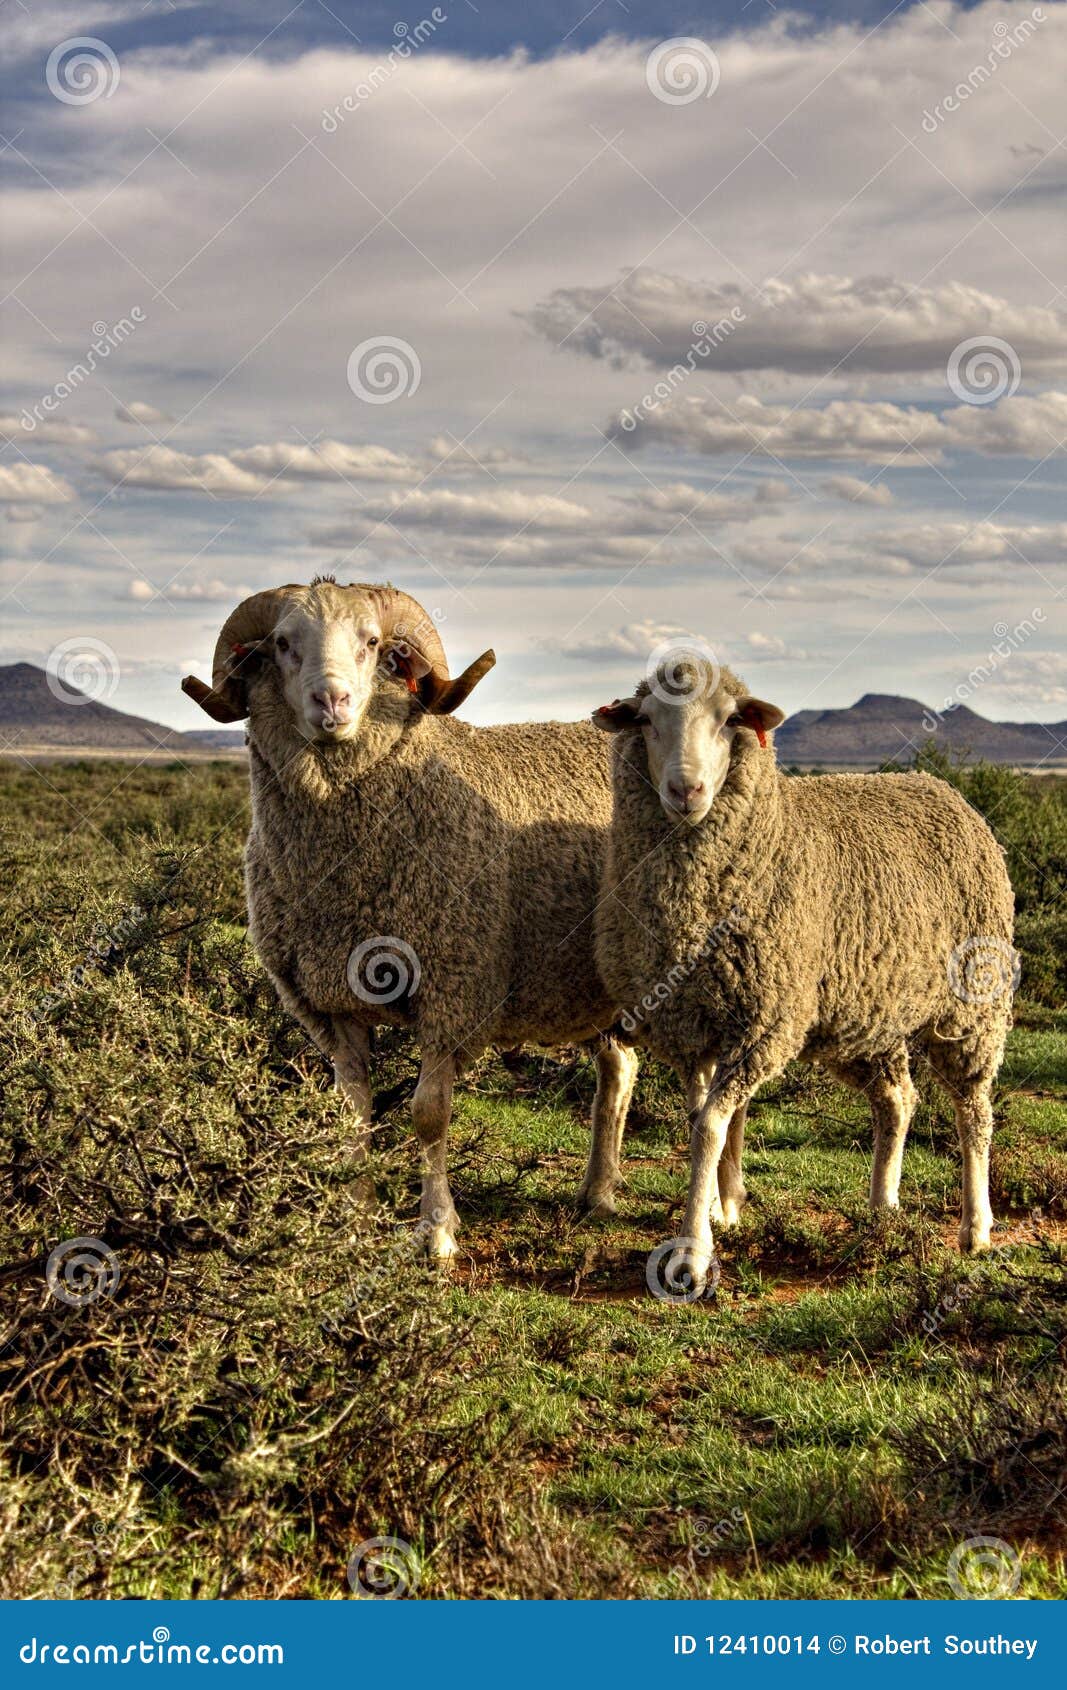 merino pair sheep